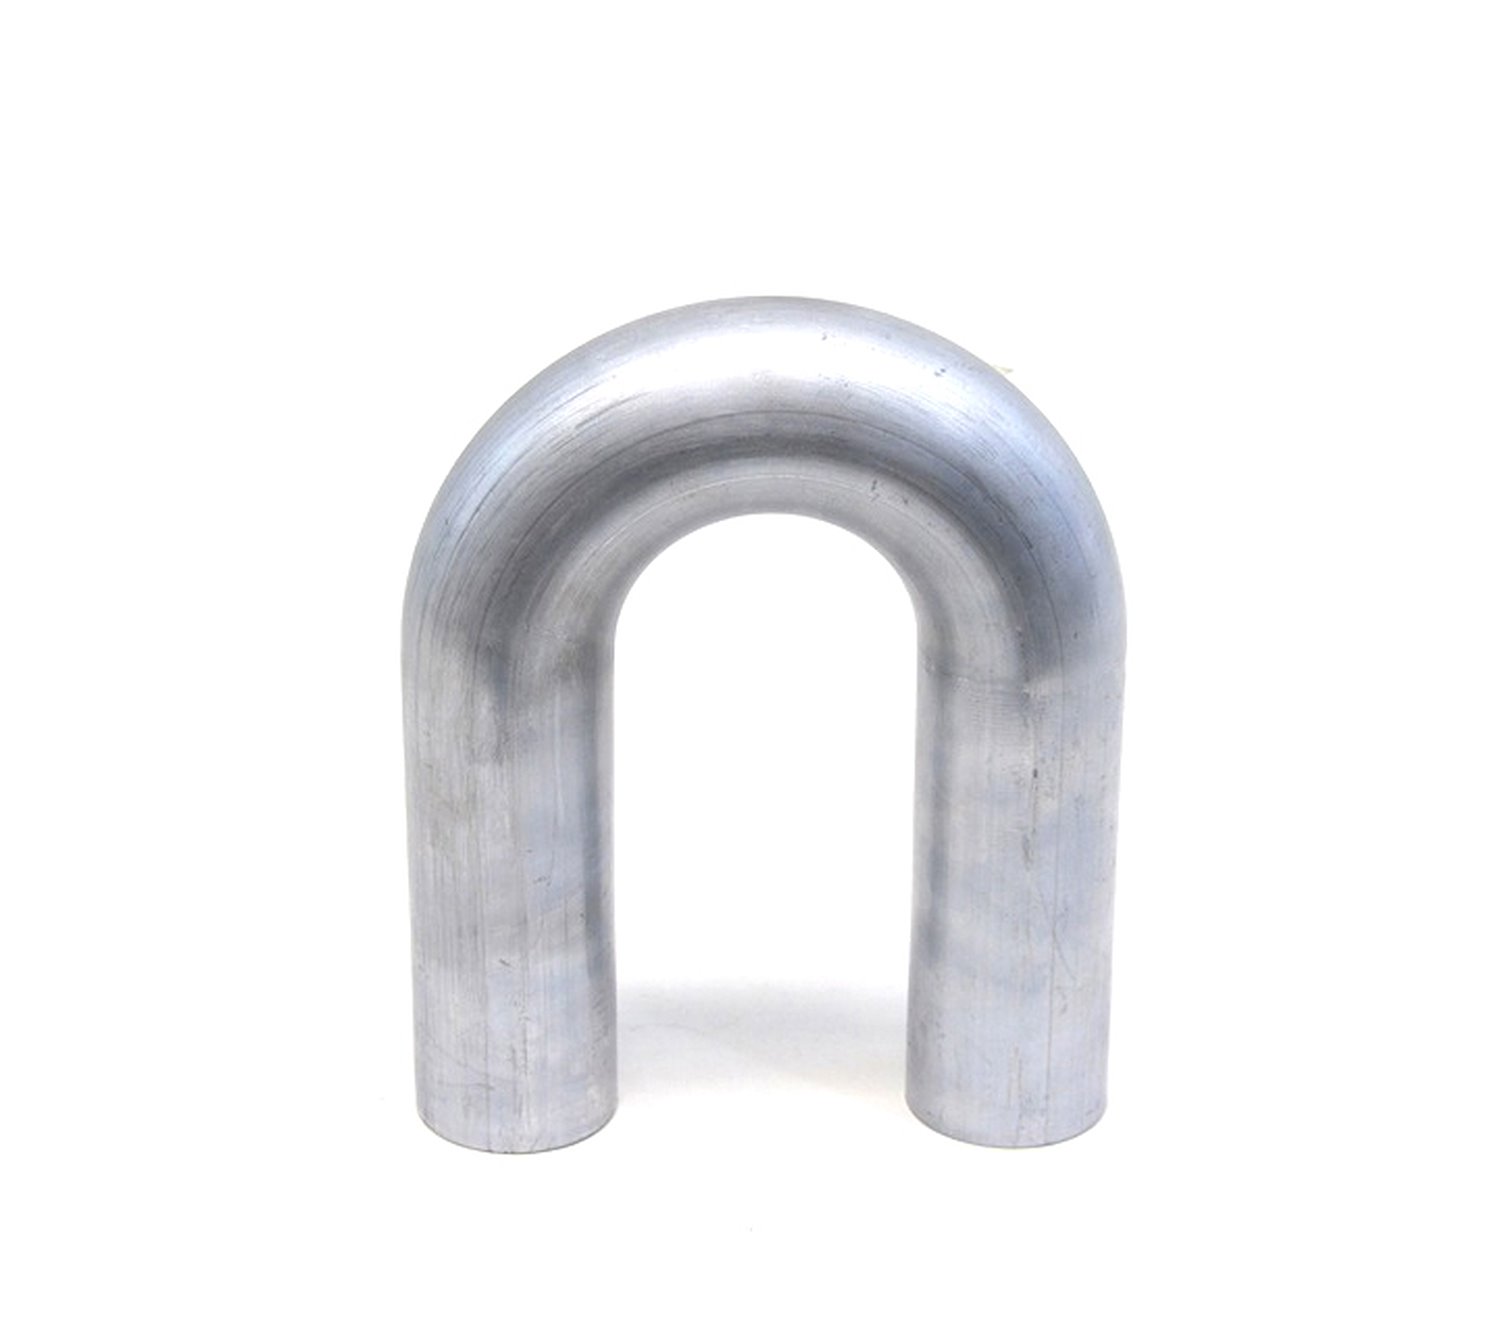 AT180-225-CLR-3 Aluminum Elbow Tube, 6061 Aluminum, 180-Degree U Bend Elbow Tubing, 2-1/4 in. OD, Tight Radius, 3 in. CLR